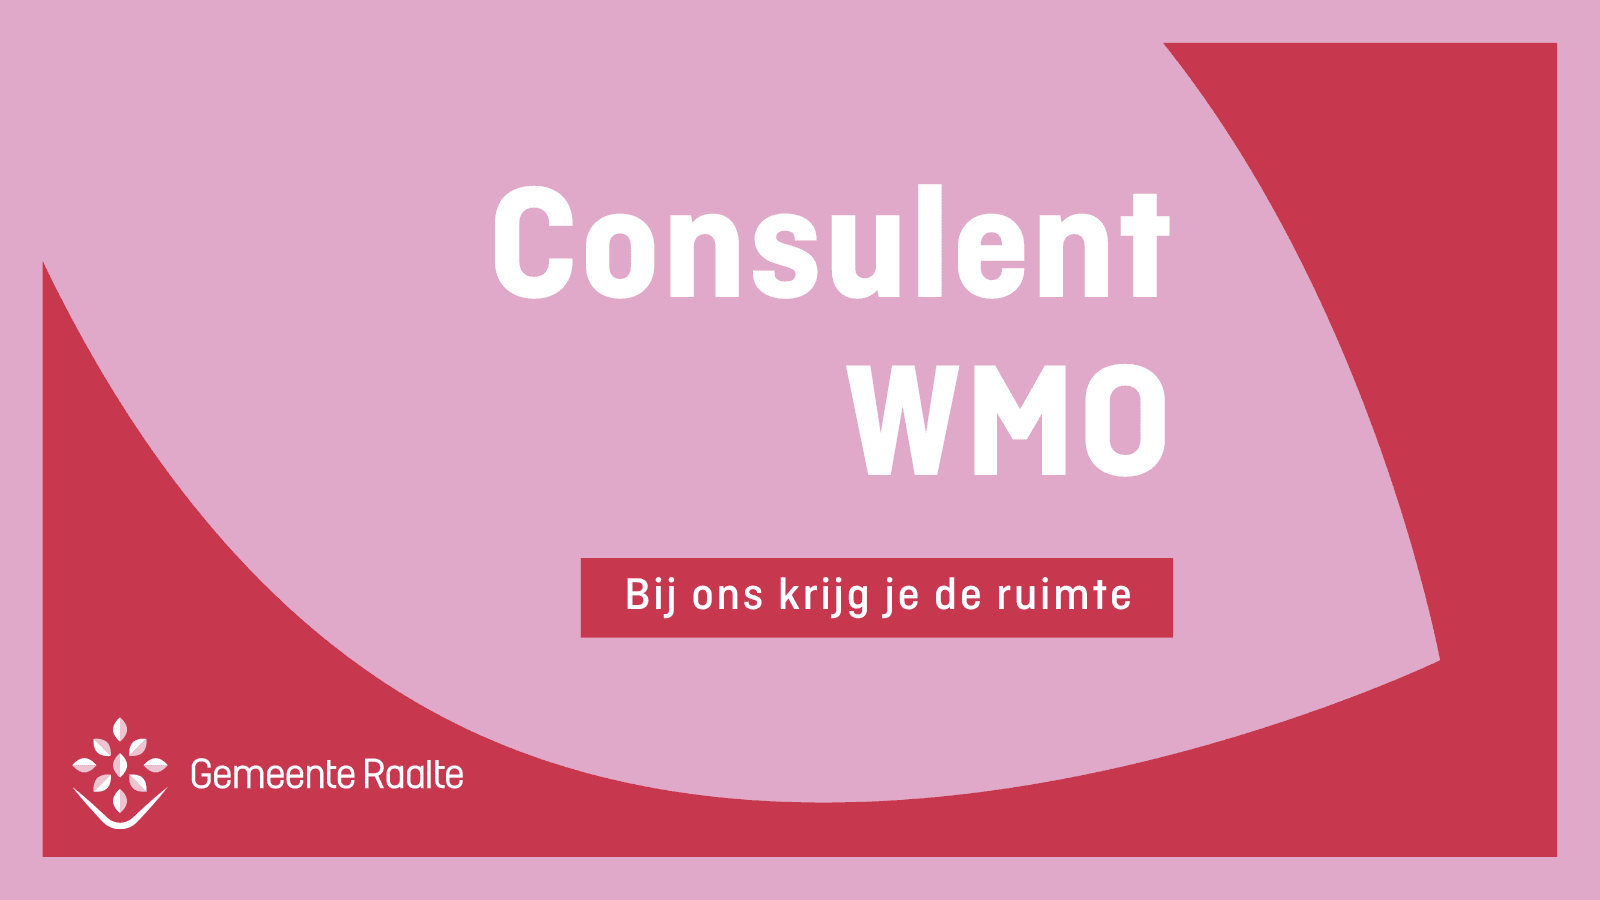 Consulent WMO